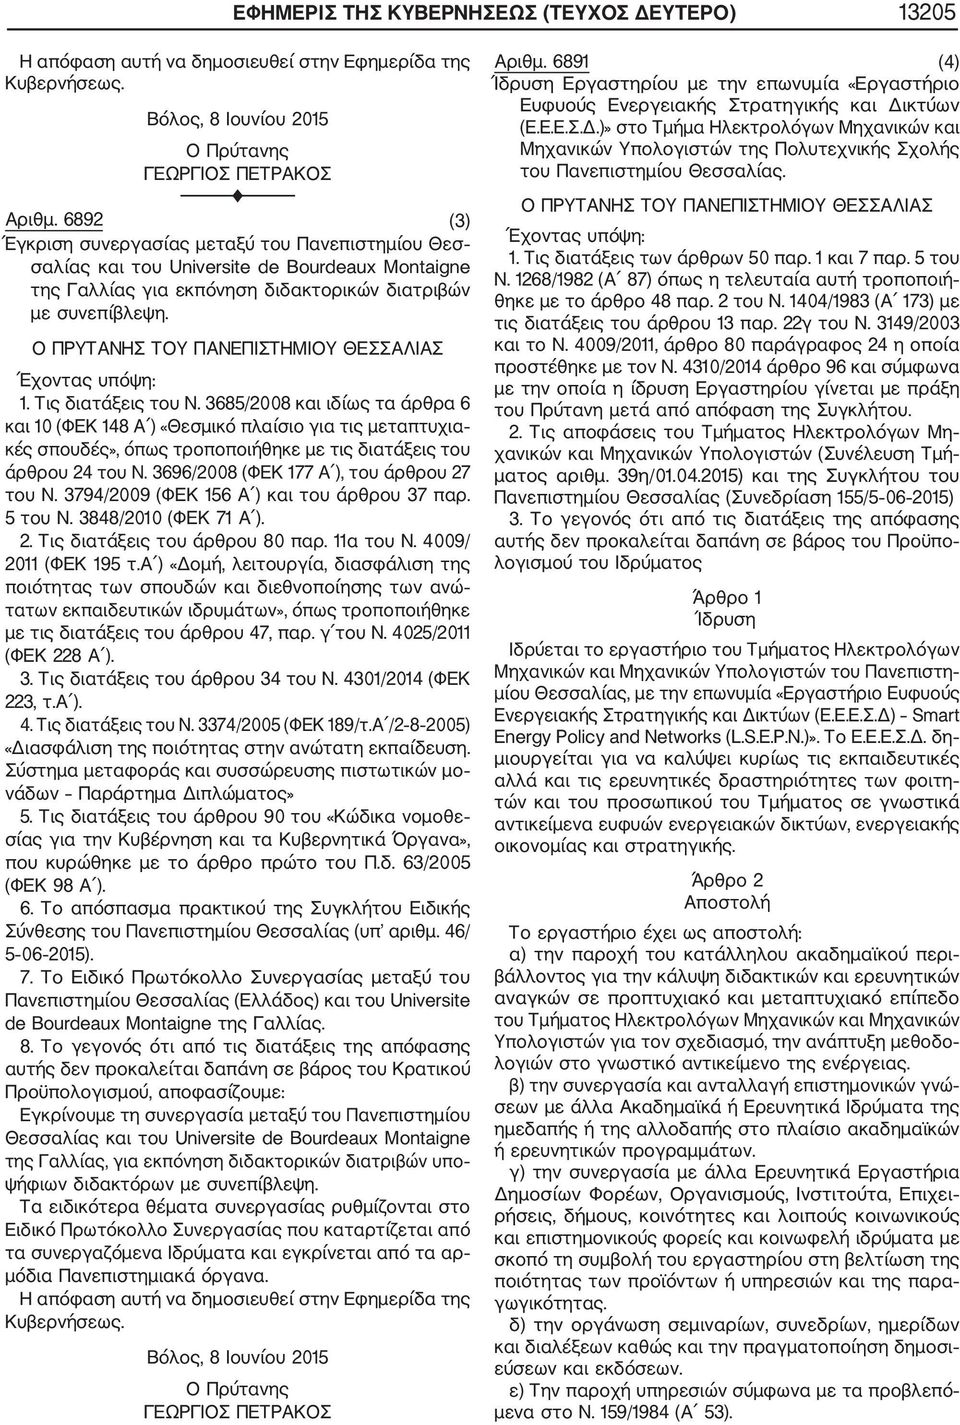 3685/2008 και ιδίως τα άρθρα 6 και 10 (ΦΕΚ 148 Α ) «Θεσμικό πλαίσιο για τις μεταπτυχια κές σπουδές», όπως τροποποιήθηκε με τις διατάξεις του άρθρου 24 του Ν.